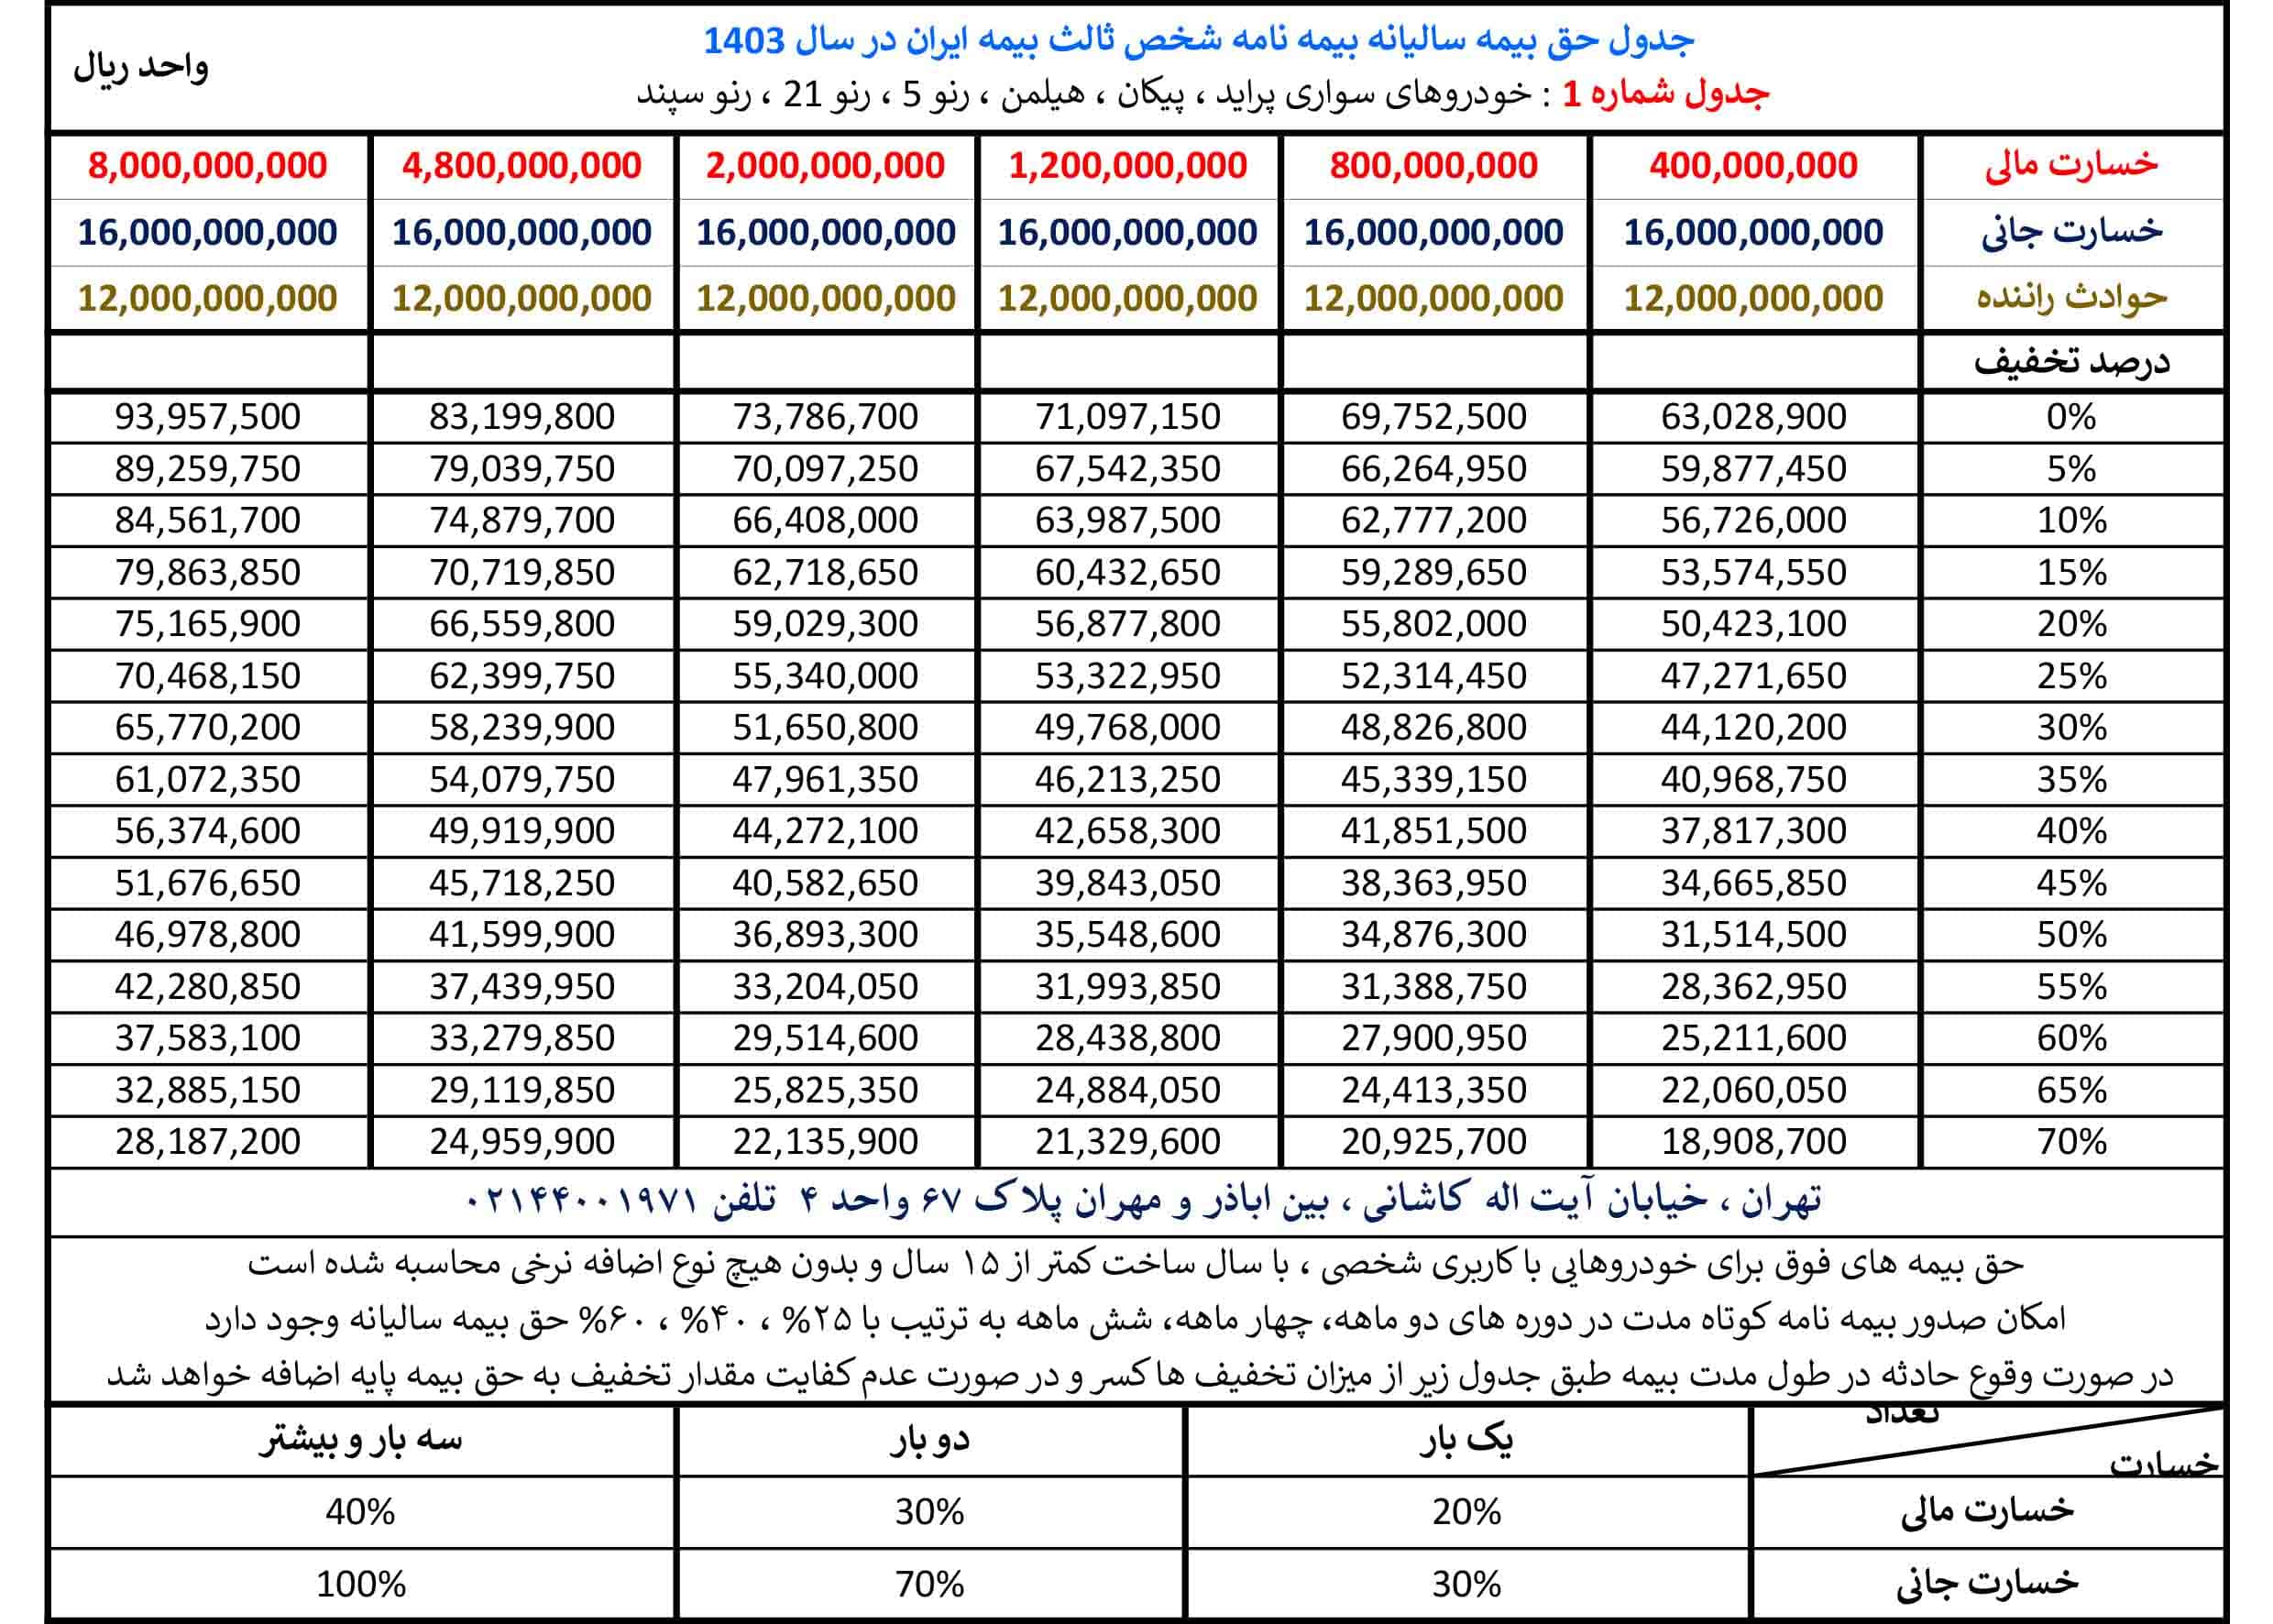 جدول حق بیمه بیمه شخص ثالث بیمه ایران در سال 1403 مربوط به گروه پراید 